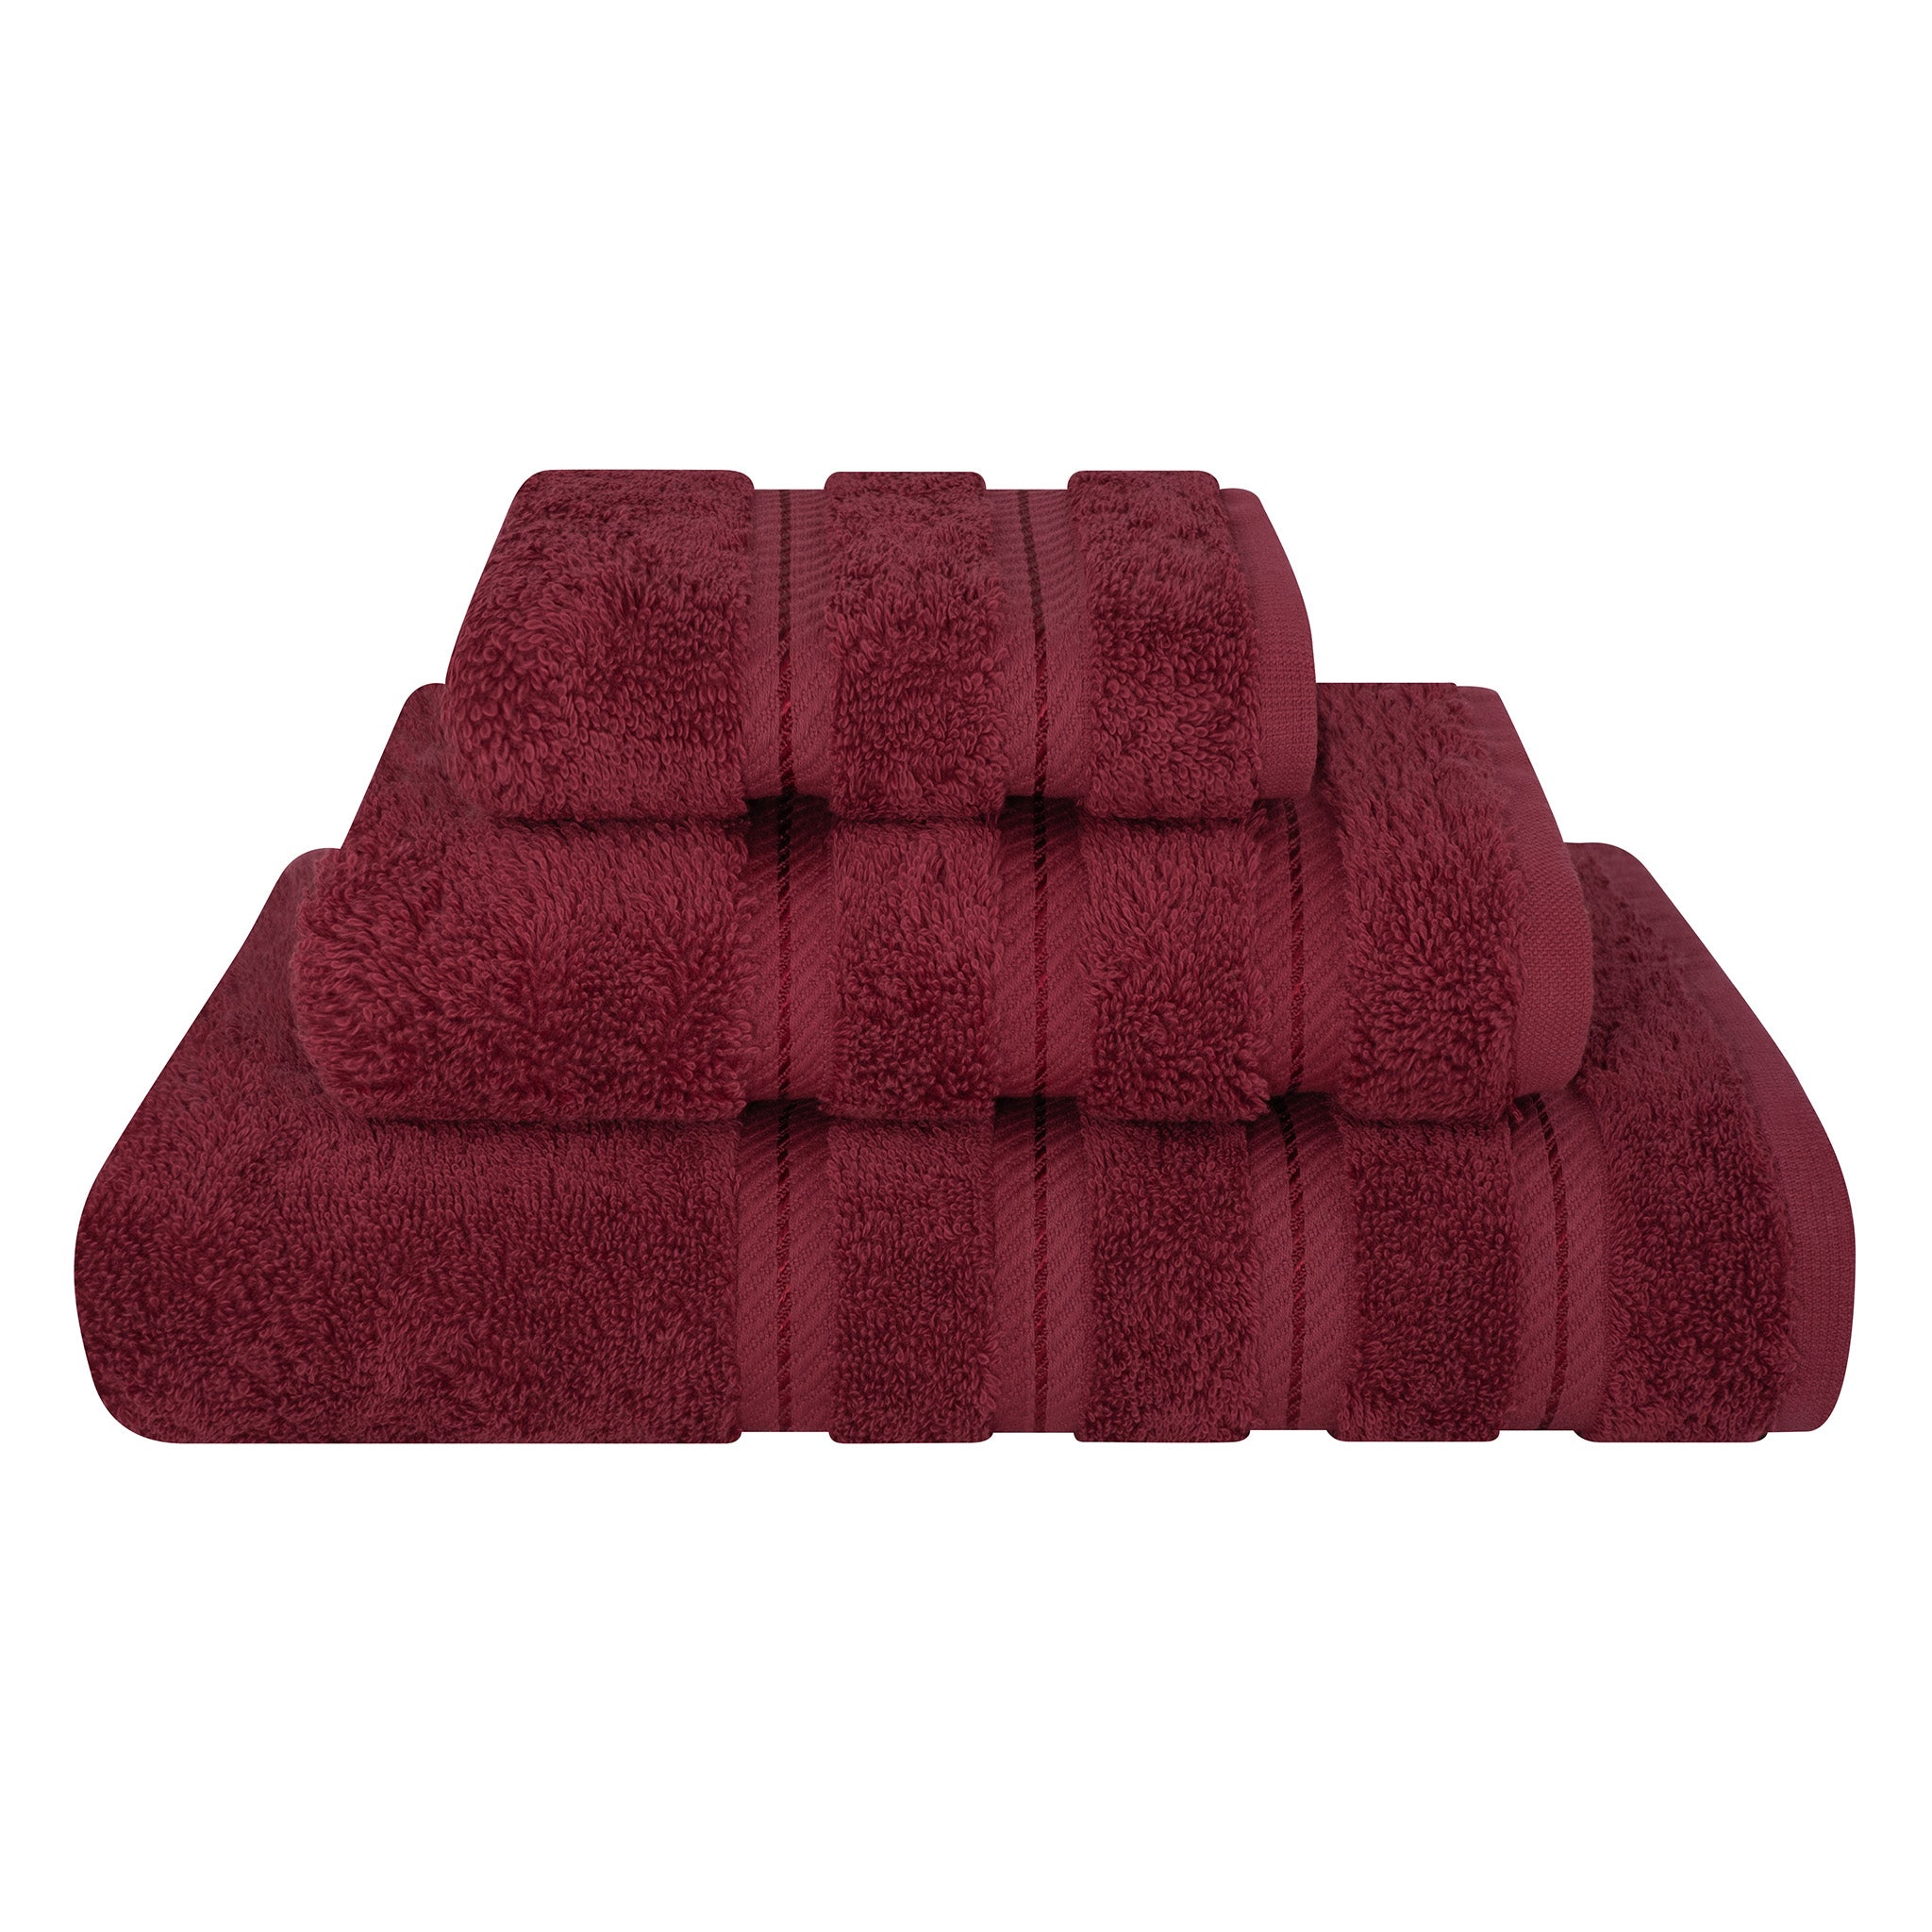 American Soft Linen 3 Piece Luxury Hotel Towel Set 20 set case pack bordeaux-red-1